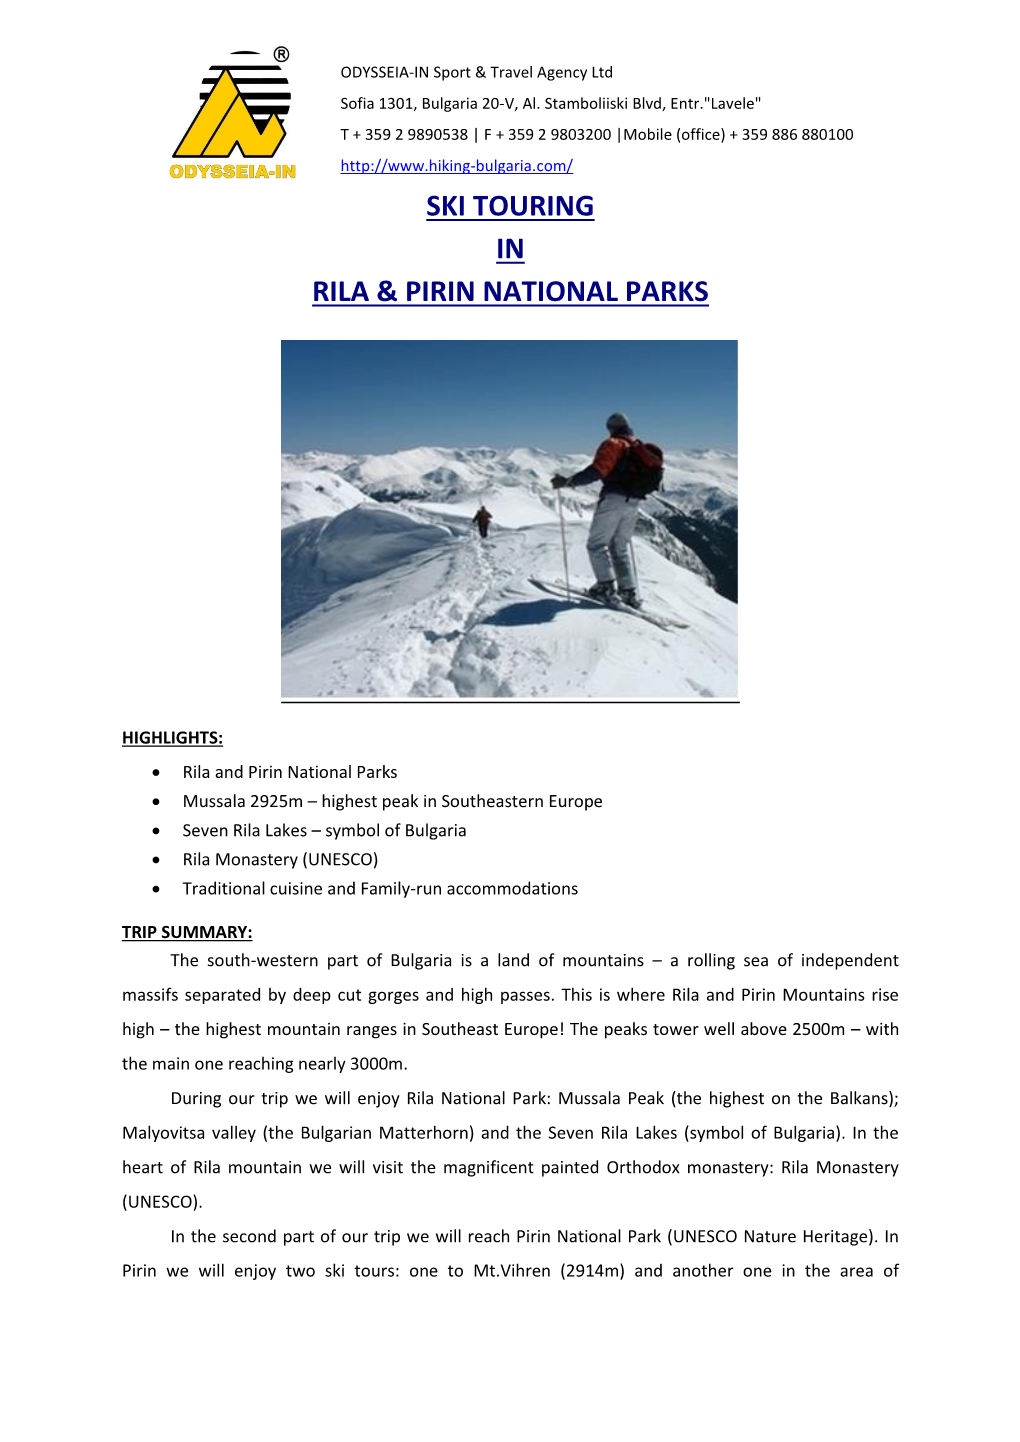 Ski Touring in Rila & Pirin National Parks